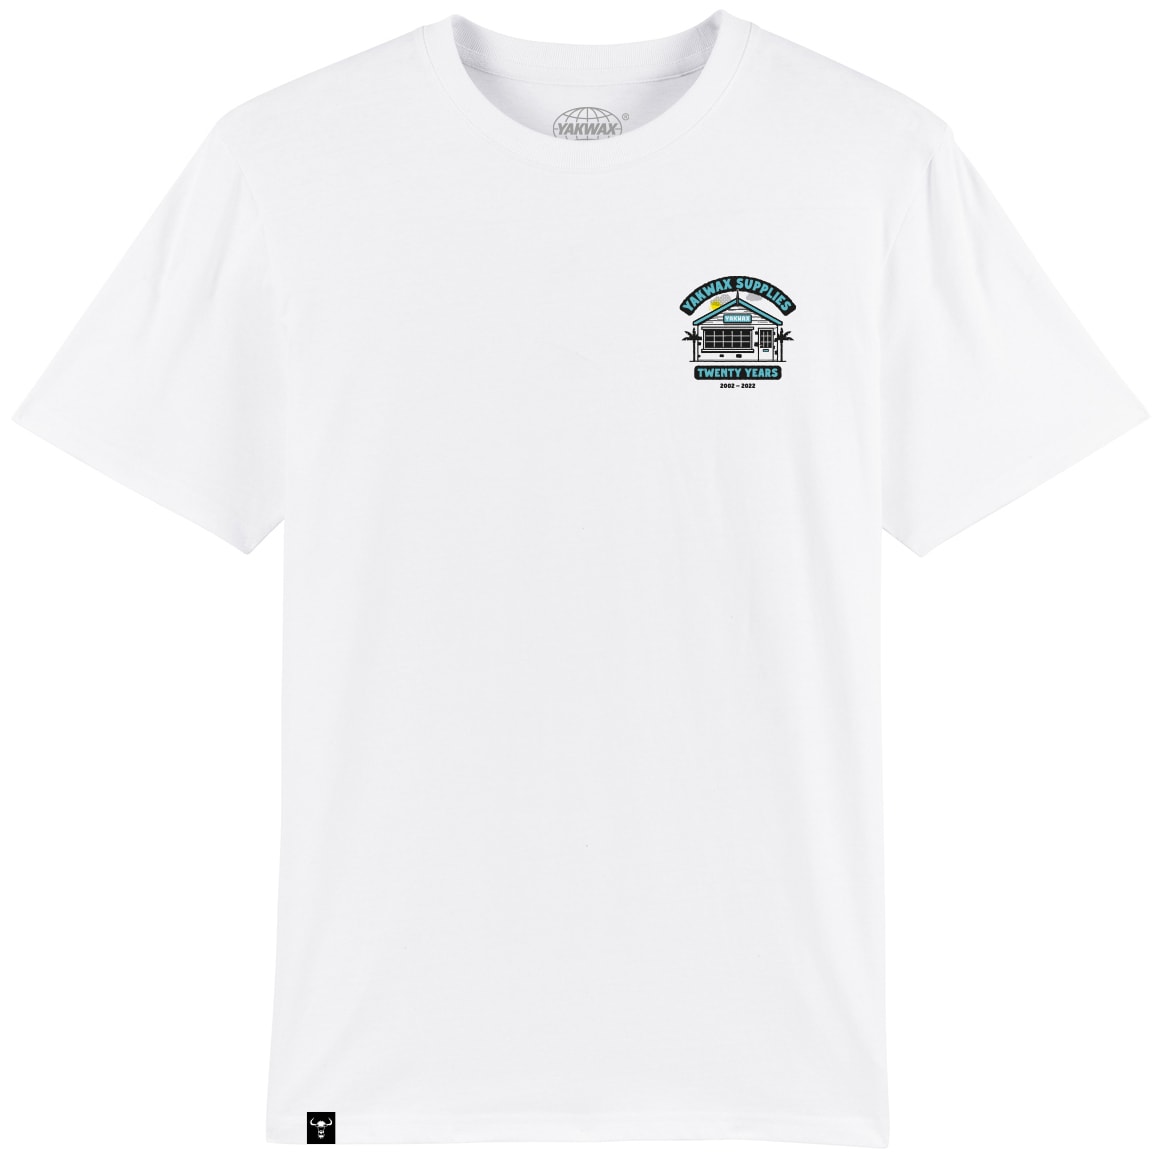 Yakwax 20 Year Anniversary T-Shirt - White - Mens Graphic T-Shirt by Yakwax